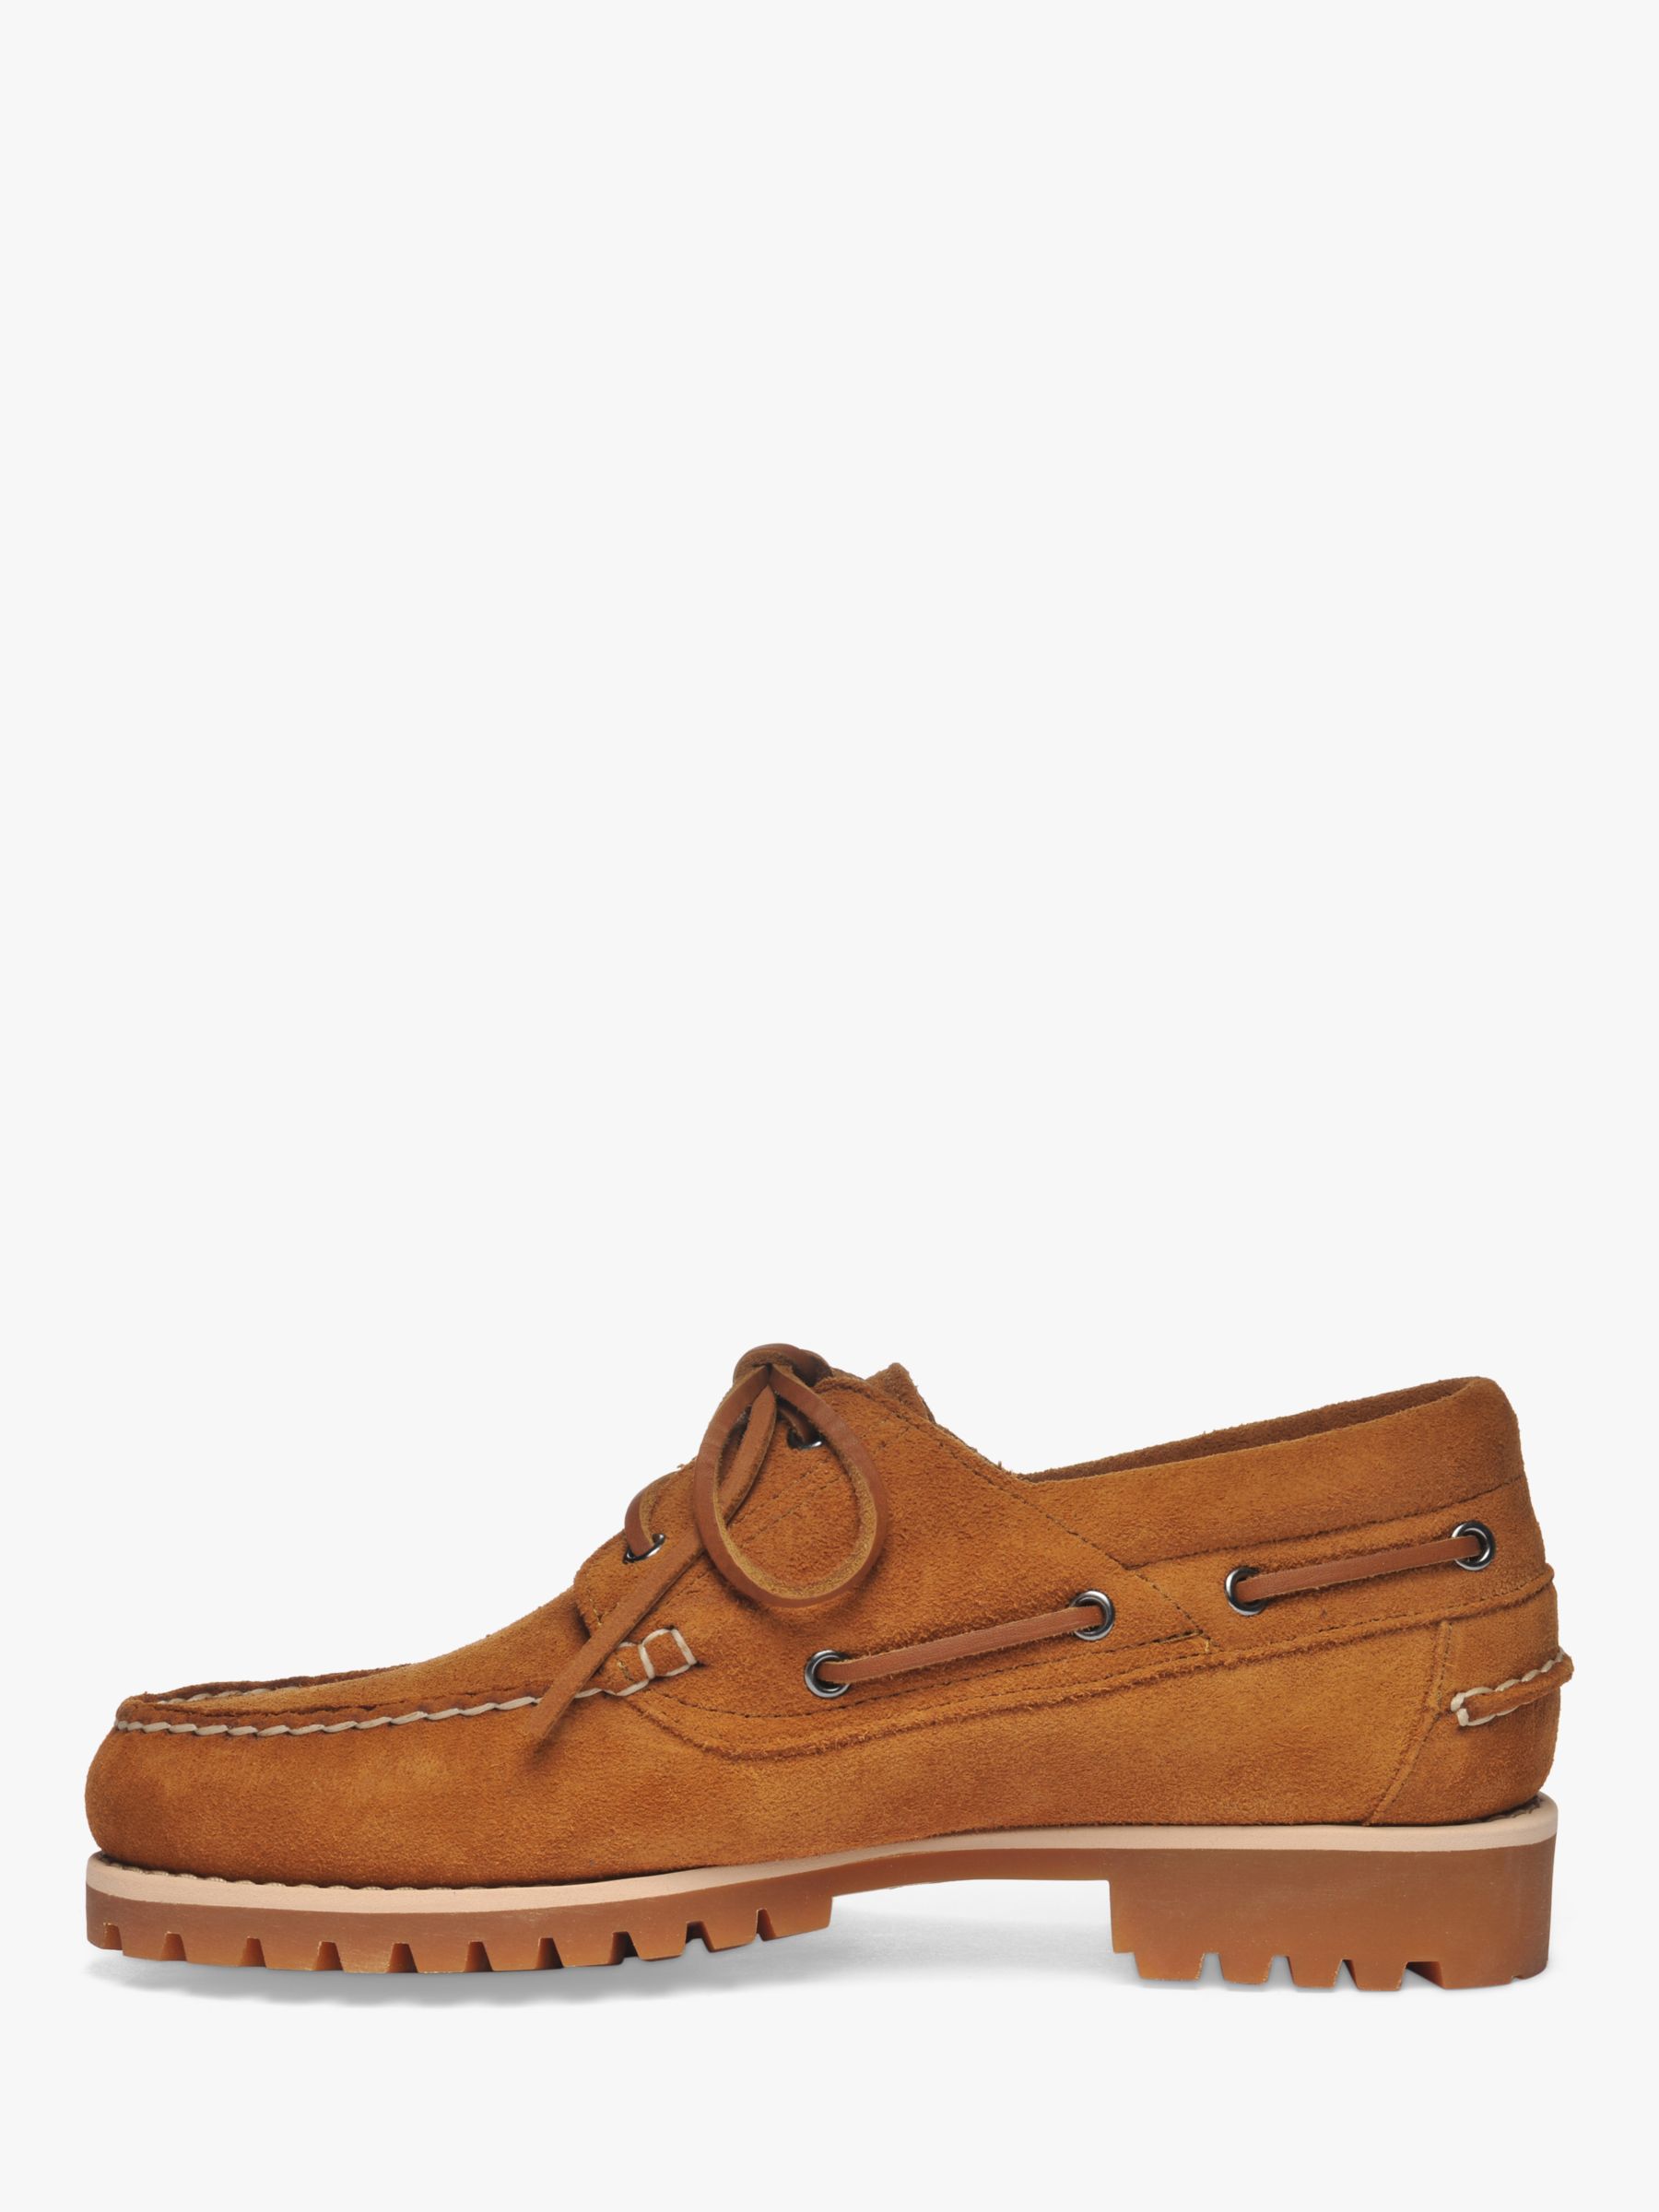 Sebago Acadia Suede Boat Shoes, Brown Tan, 7